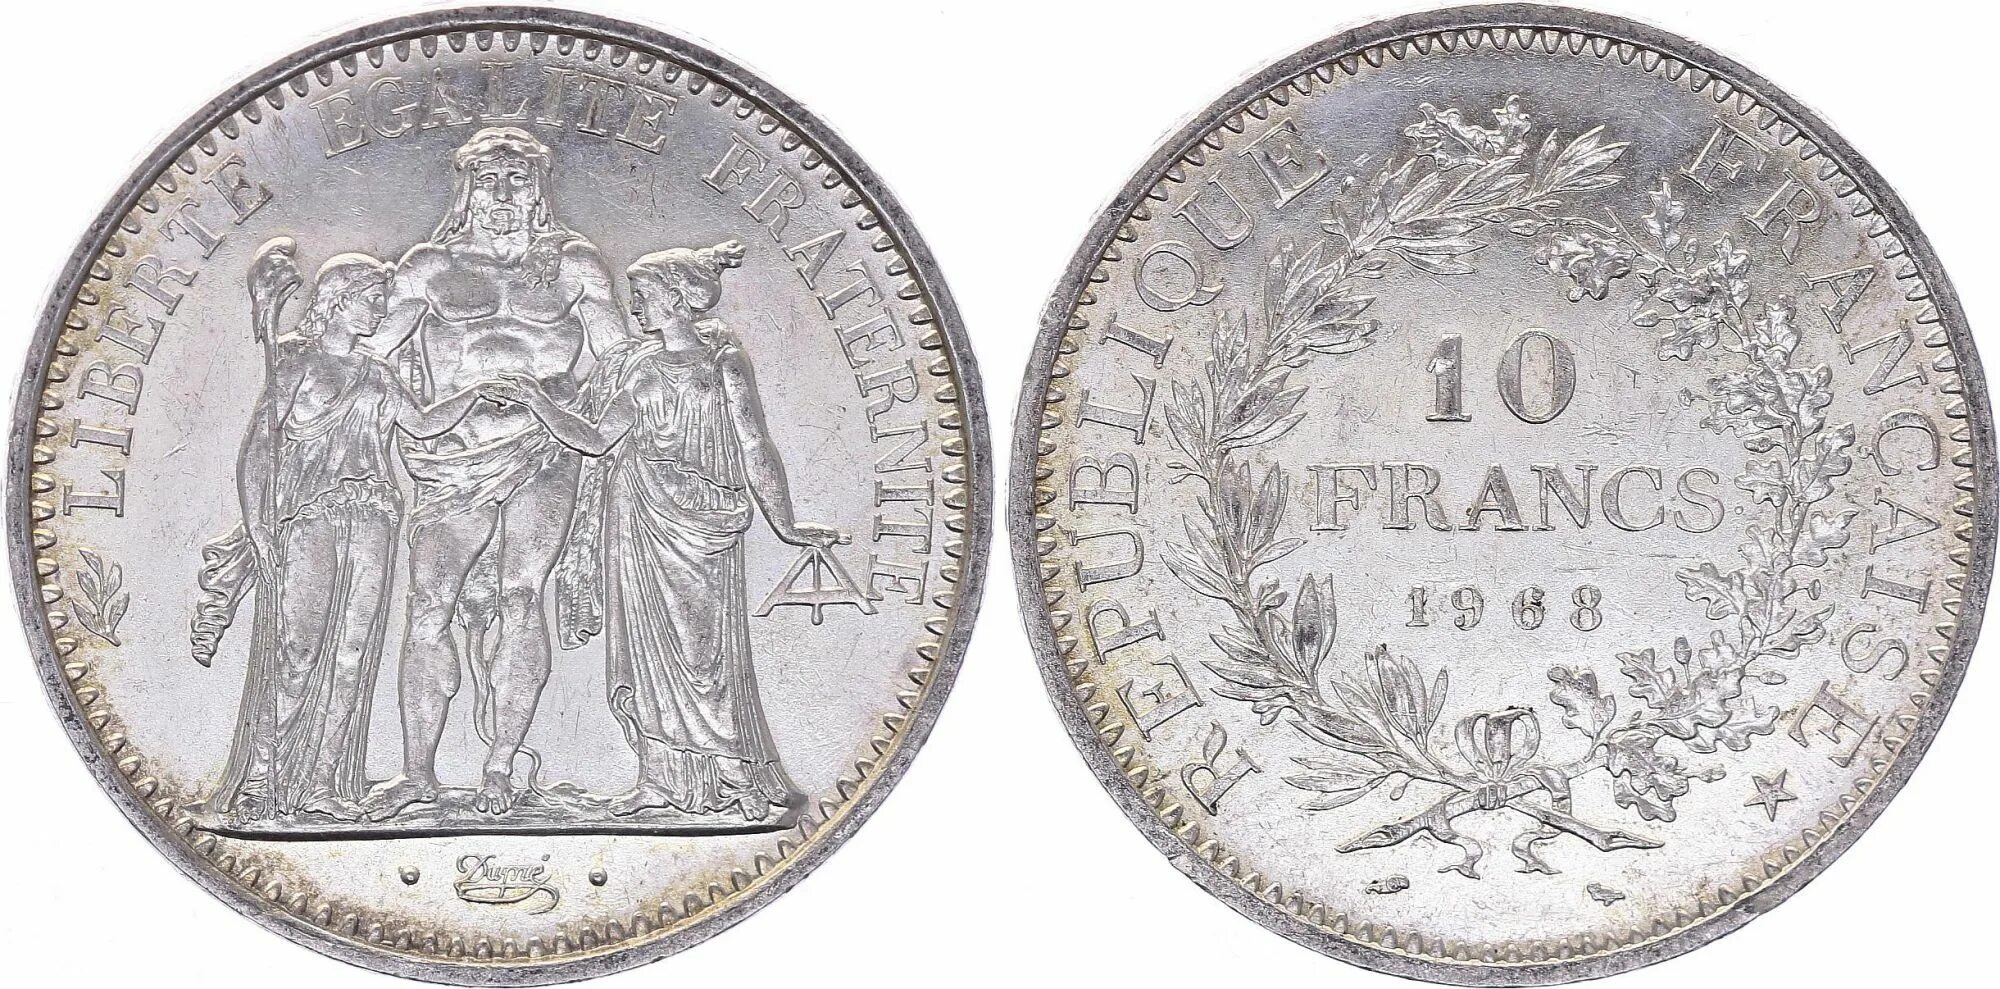 10 Francs. Монета 50 Francs, Франция, 1878-1904. Монета серебро Геркулес. Франкрейх серебряные монеты средневековые.